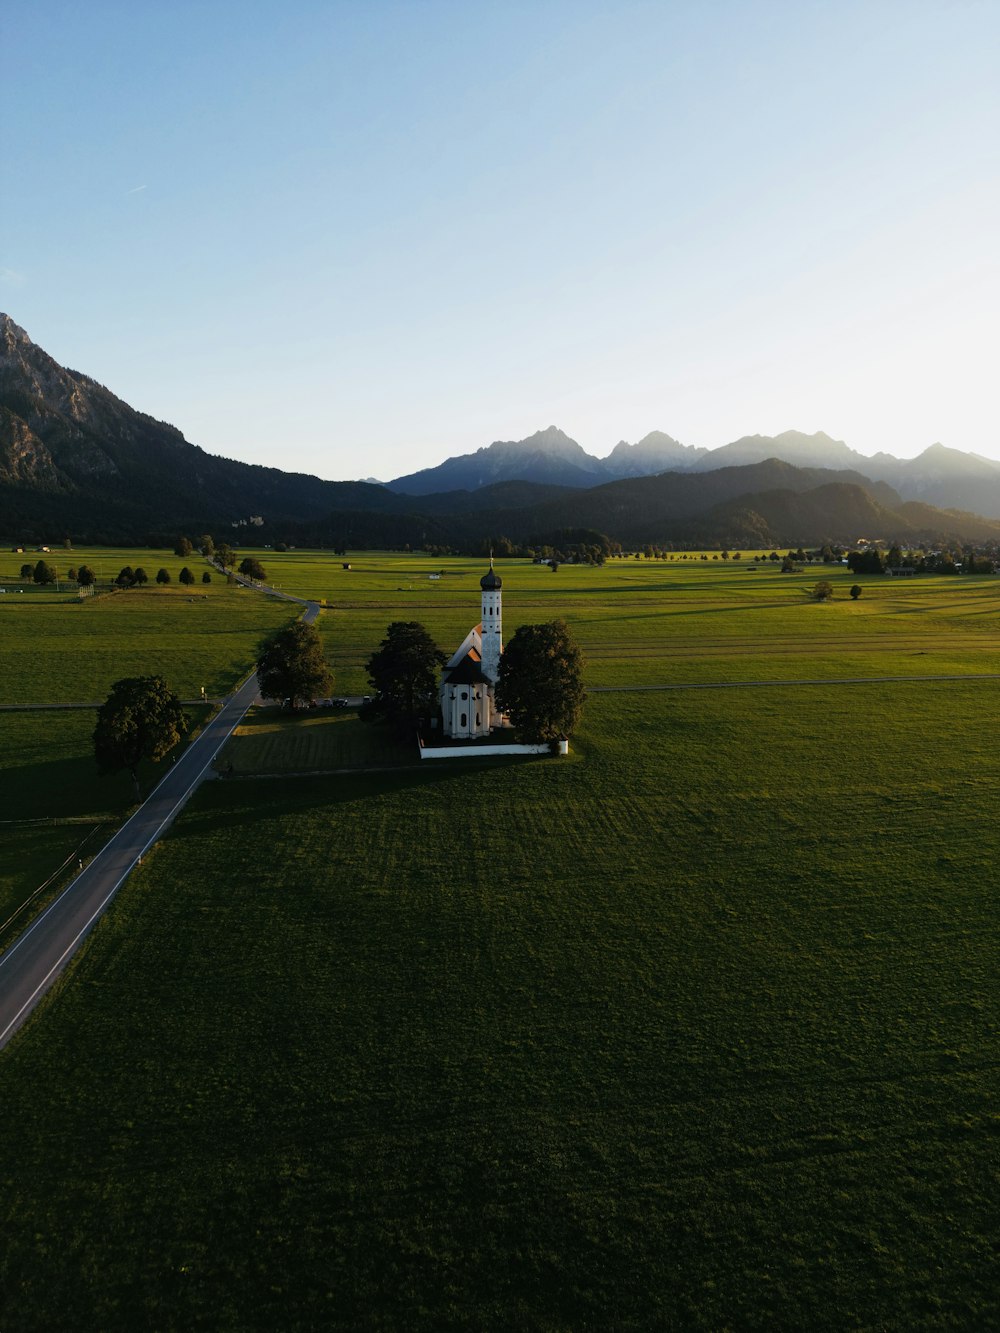 Una chiesa in mezzo a un campo con le montagne sullo sfondo